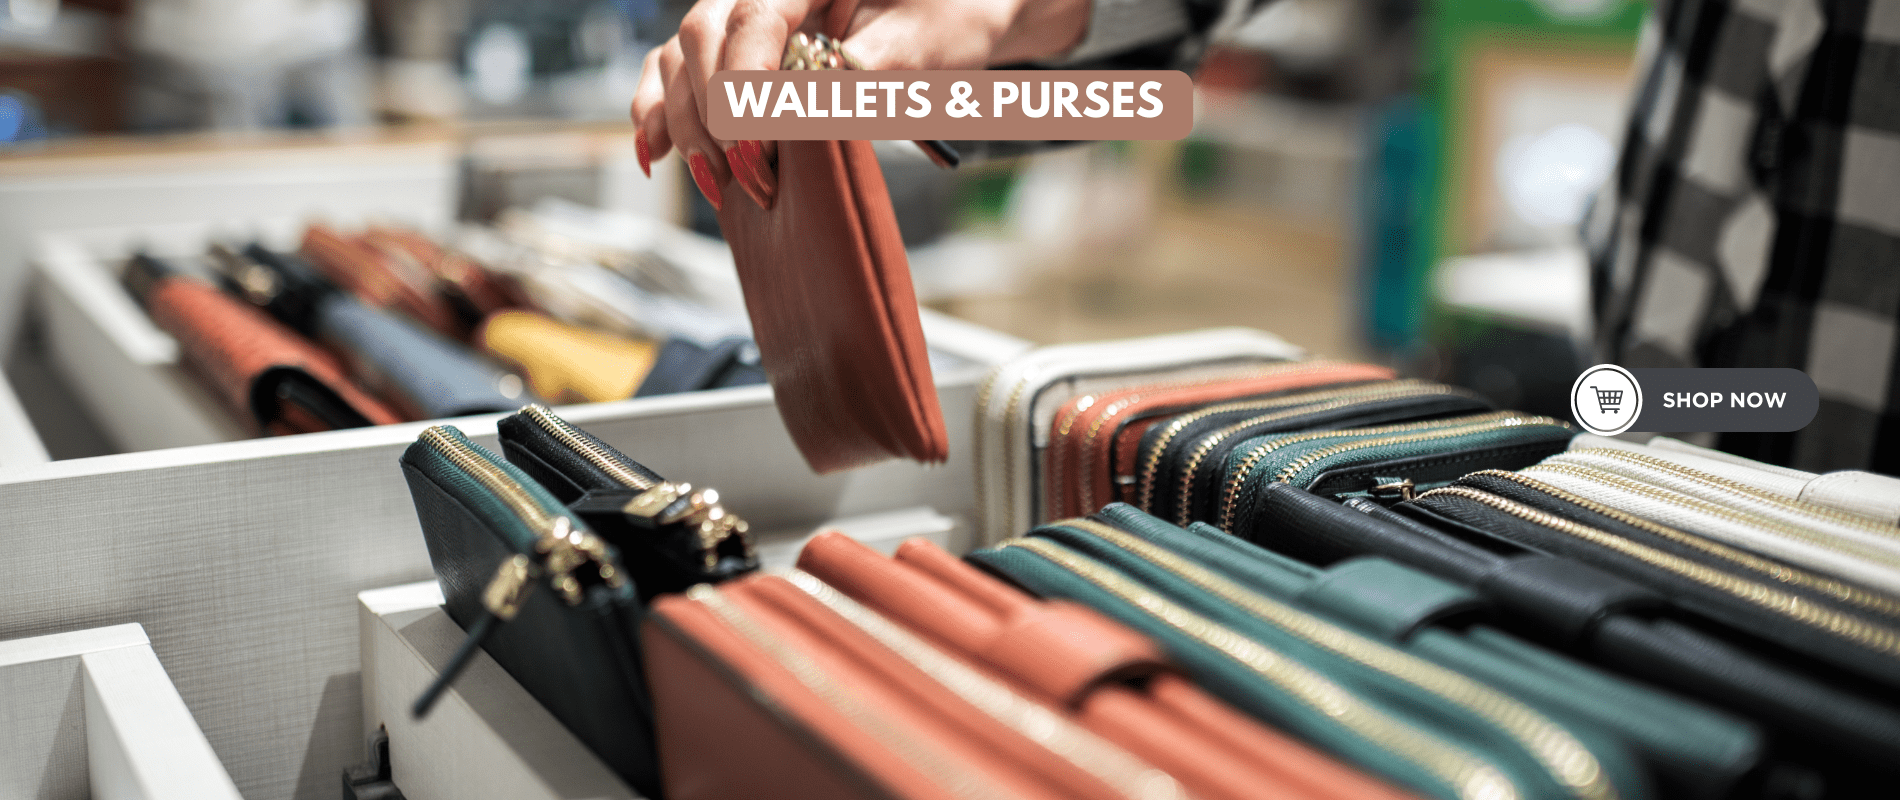 Wallets & purses